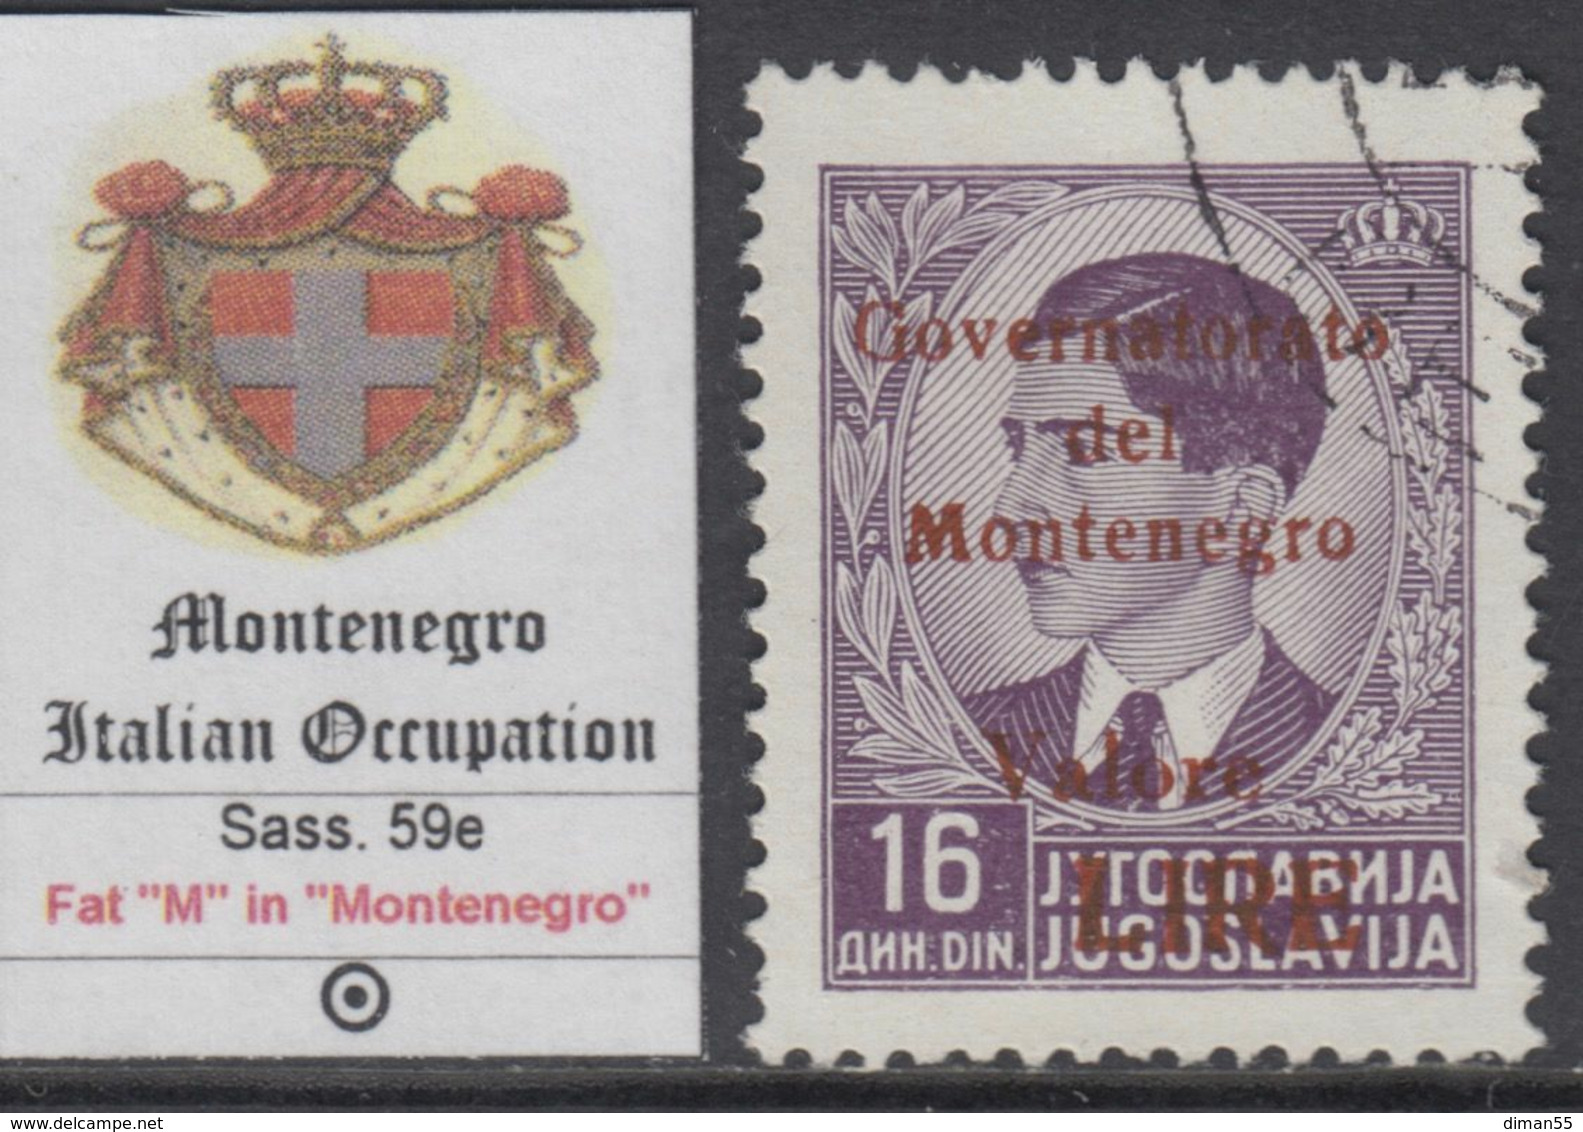 ITALIA OCC. MONTENEGRO - ITAL. BESETZUNG - N. 59e -  Cv 100 Euro - Varietà "M" Grossa - USATO - LUXUS GESTEMPELT - Montenegro